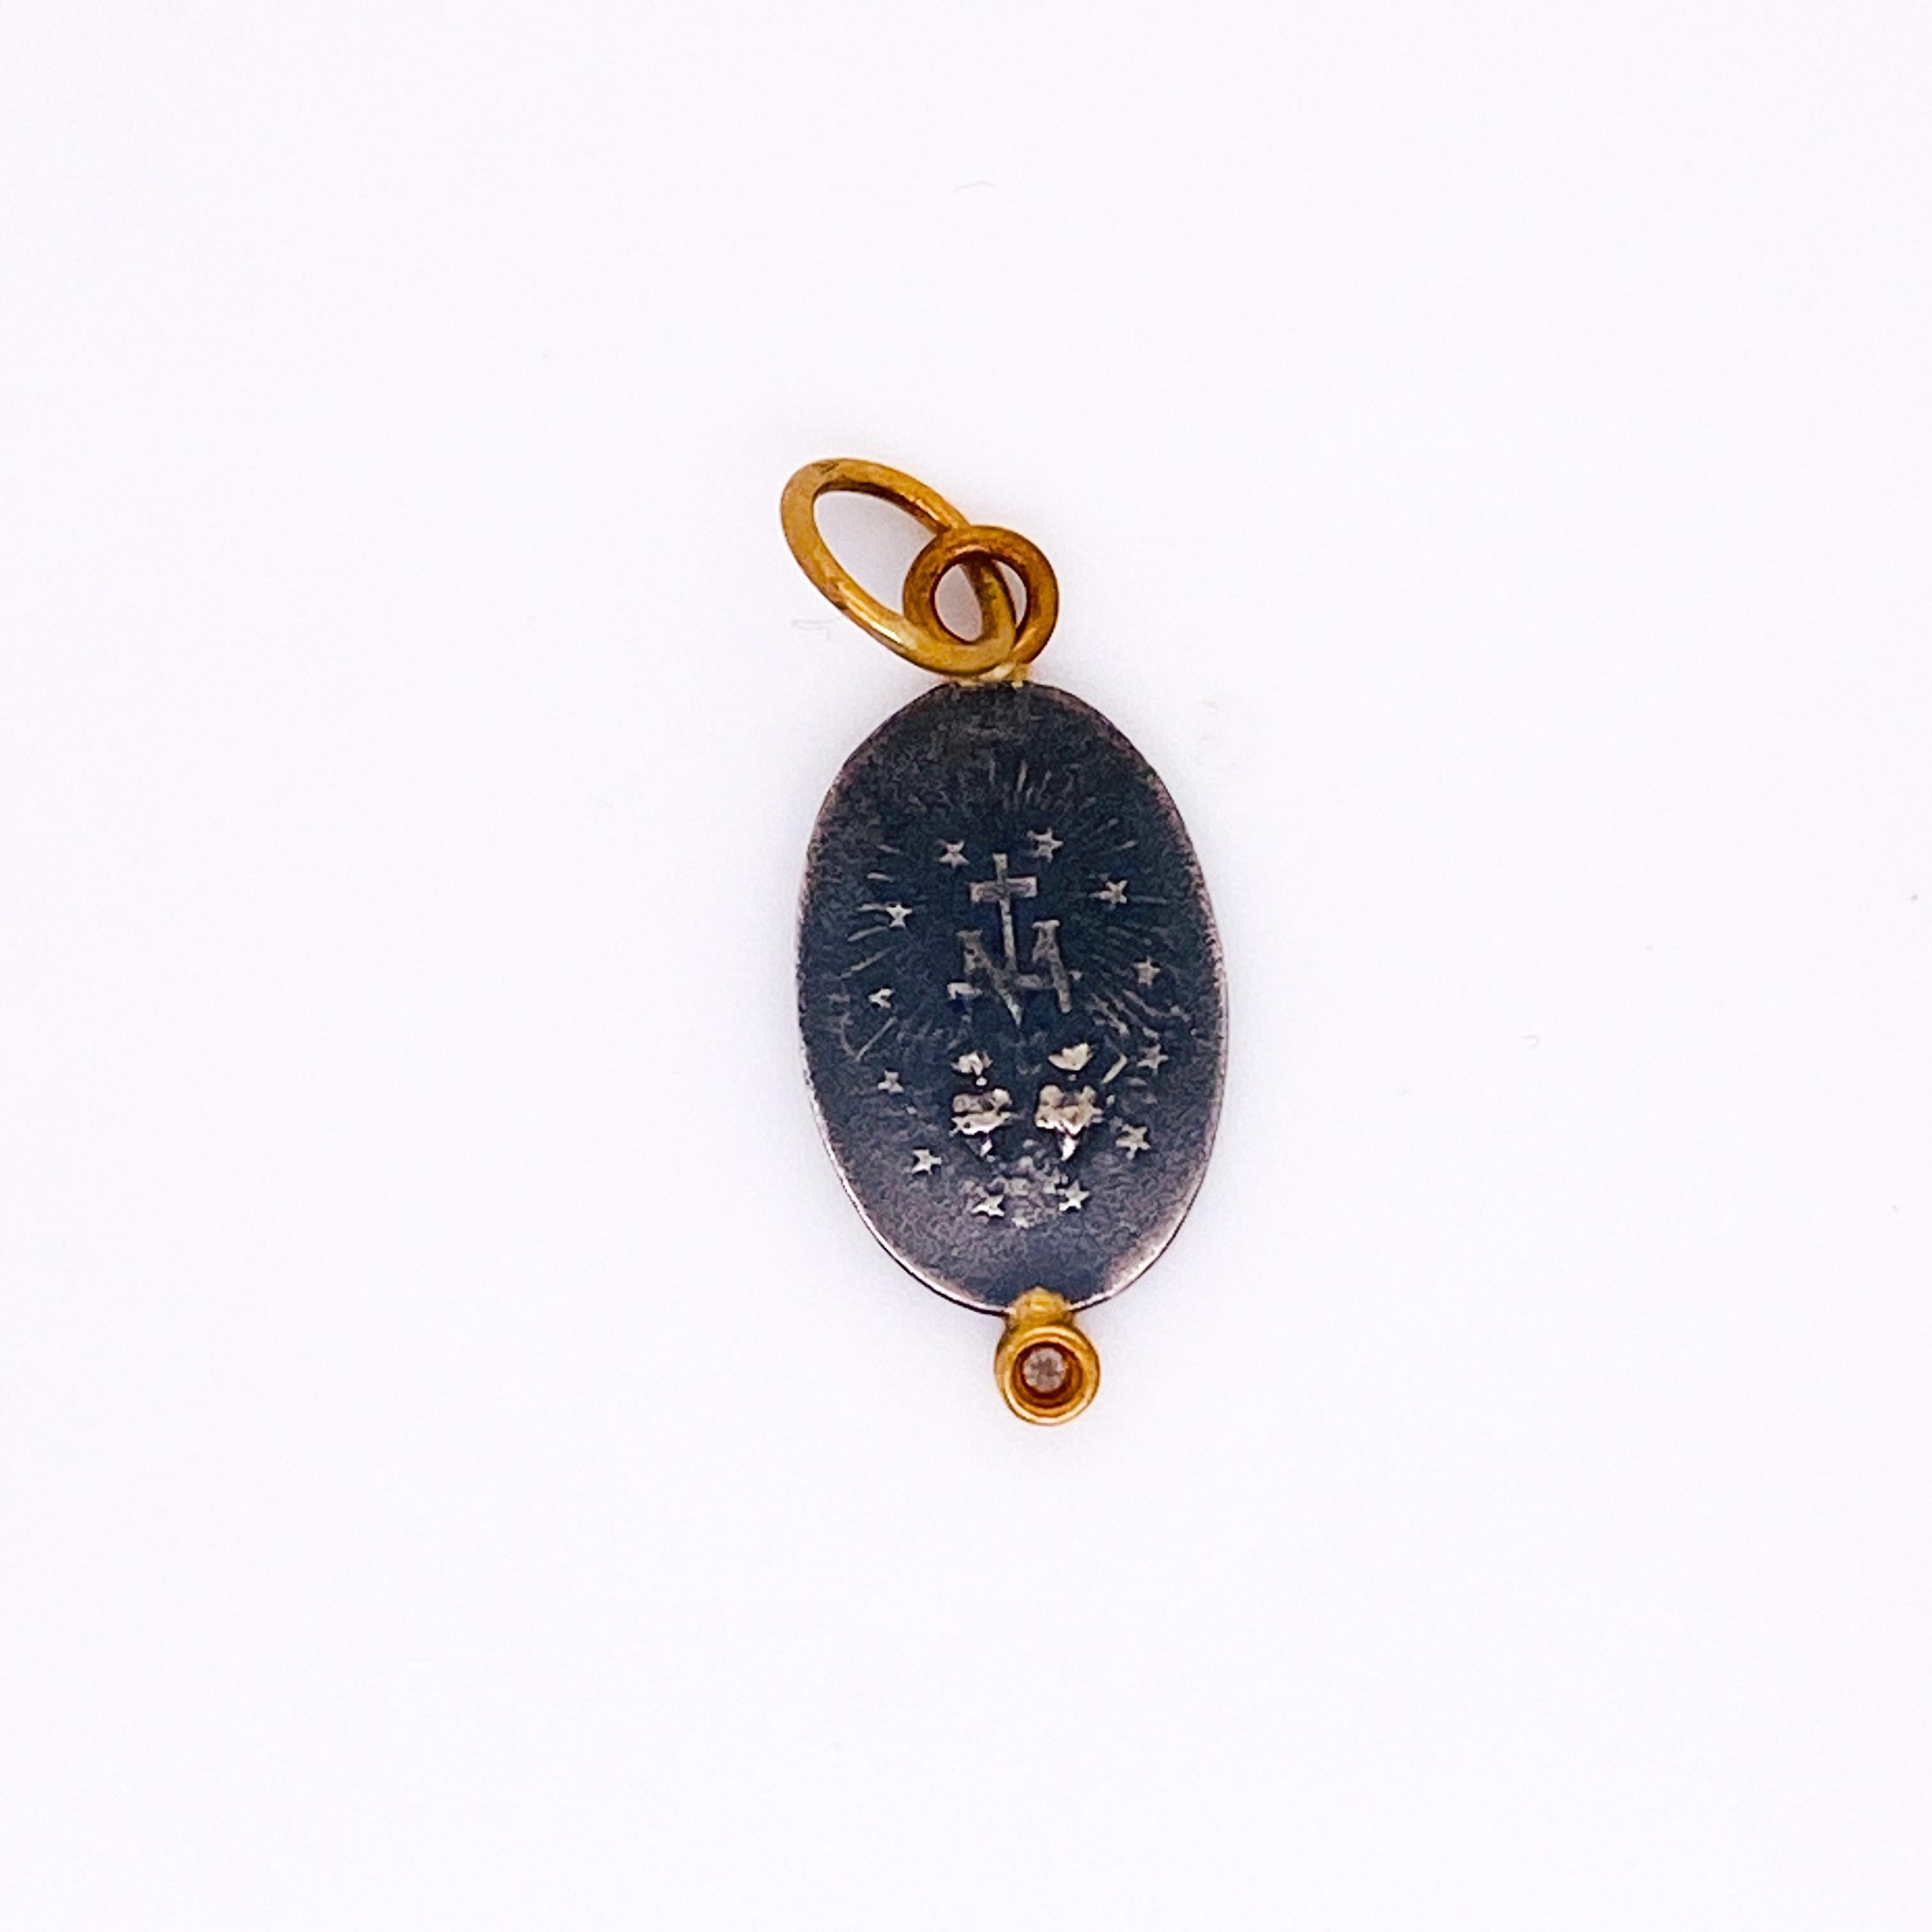 Ce pendentif est composé d'un charme en argent sterling inspiré d'une médaille miraculeuse des années 1850. La Mère Marie, ou Vierge Marie, est représentée avec des rayons de soleil encadrant sa figure, représentant la puissance de Dieu. Elle